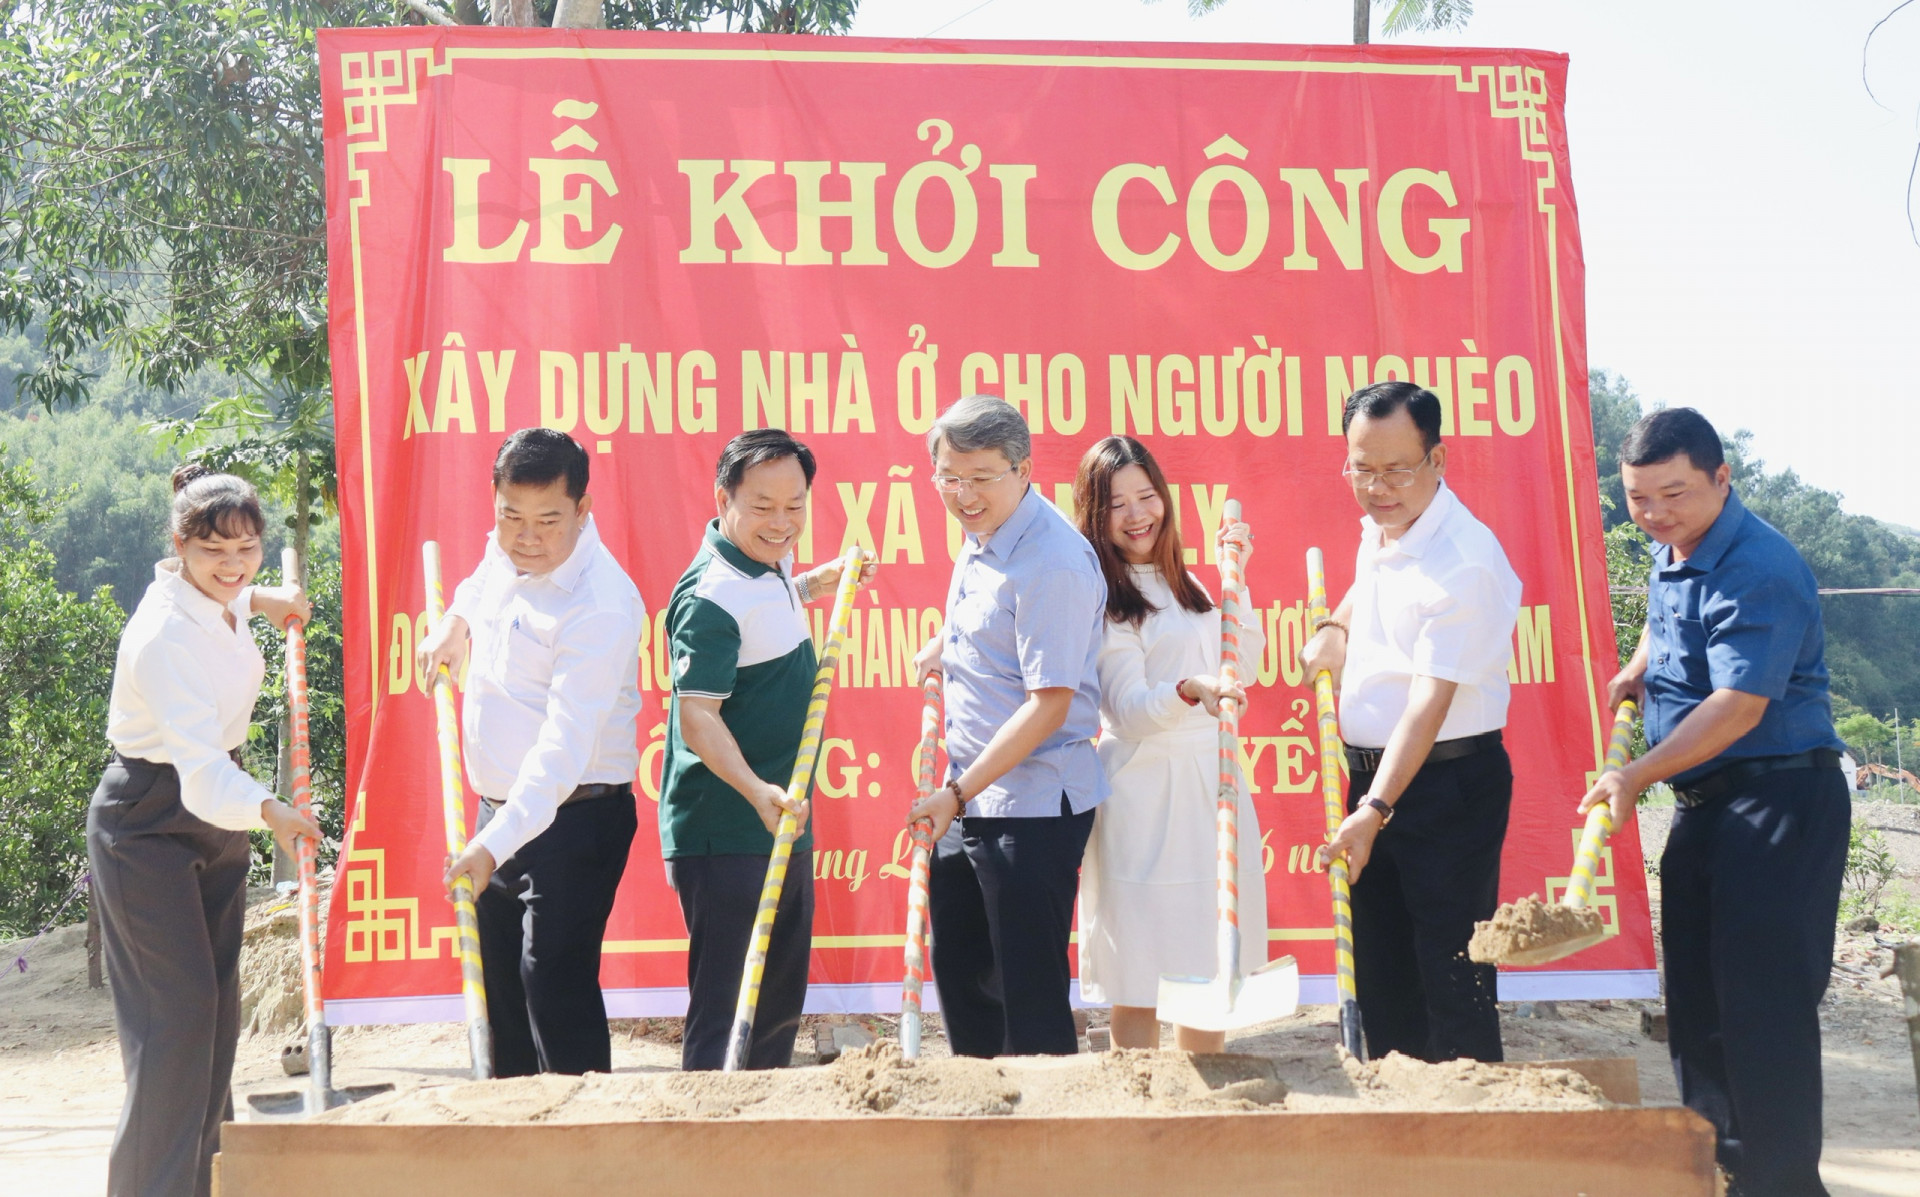 Bí thư Tỉnh ủy Nguyễn Hải Ninh và các đại biểu khởi công xây dựng nhà cho gia đình ông Cao Khuyển, xã Giang Ly, Khánh Vĩnh